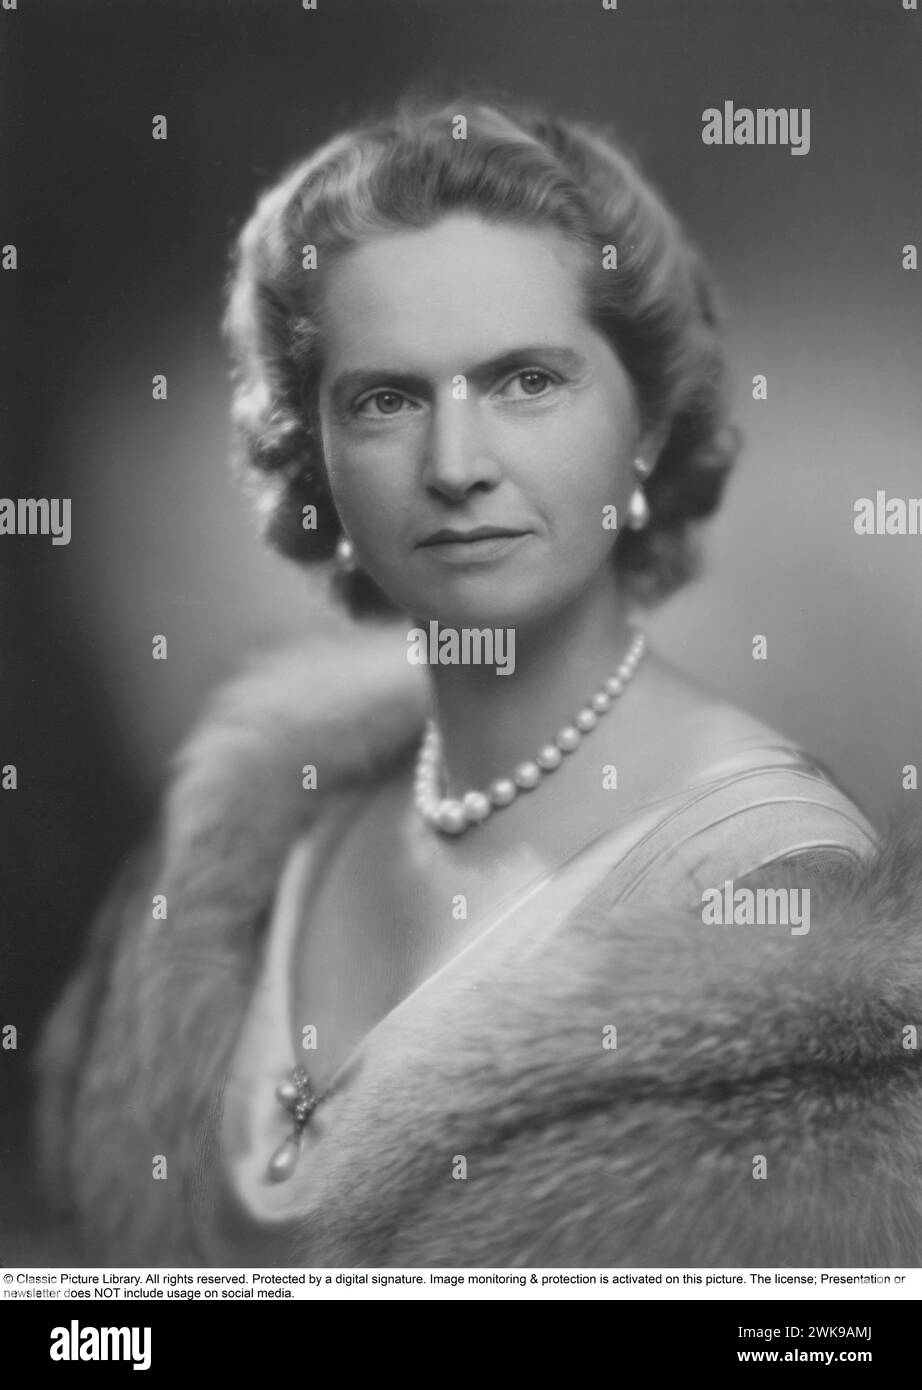 Principessa Sibilla di Sassonia-Coburgo e Gotha. 18 gennaio 1908 - 28 novembre 1972. Era un membro della famiglia reale svedese e madre dell'attuale re di Svezia, Carlo XVI Gustavo. Divenne una principessa svedese quando sposò il principe Gustavo Adolfo, duca di Västerbotten nel 1932. Aveva quindi la prospettiva di diventare regina un giorno, ma il principe fu ucciso in un incidente aereo nel 1947 e non visse per salire al trono svedese. Suo figlio divenne re l'anno dopo la sua morte. 1949 *** didascalia locale *** © Libreria di immagini classica. Tutti i diritti riservati. Protetto da una firma digitale. Immagine Foto Stock